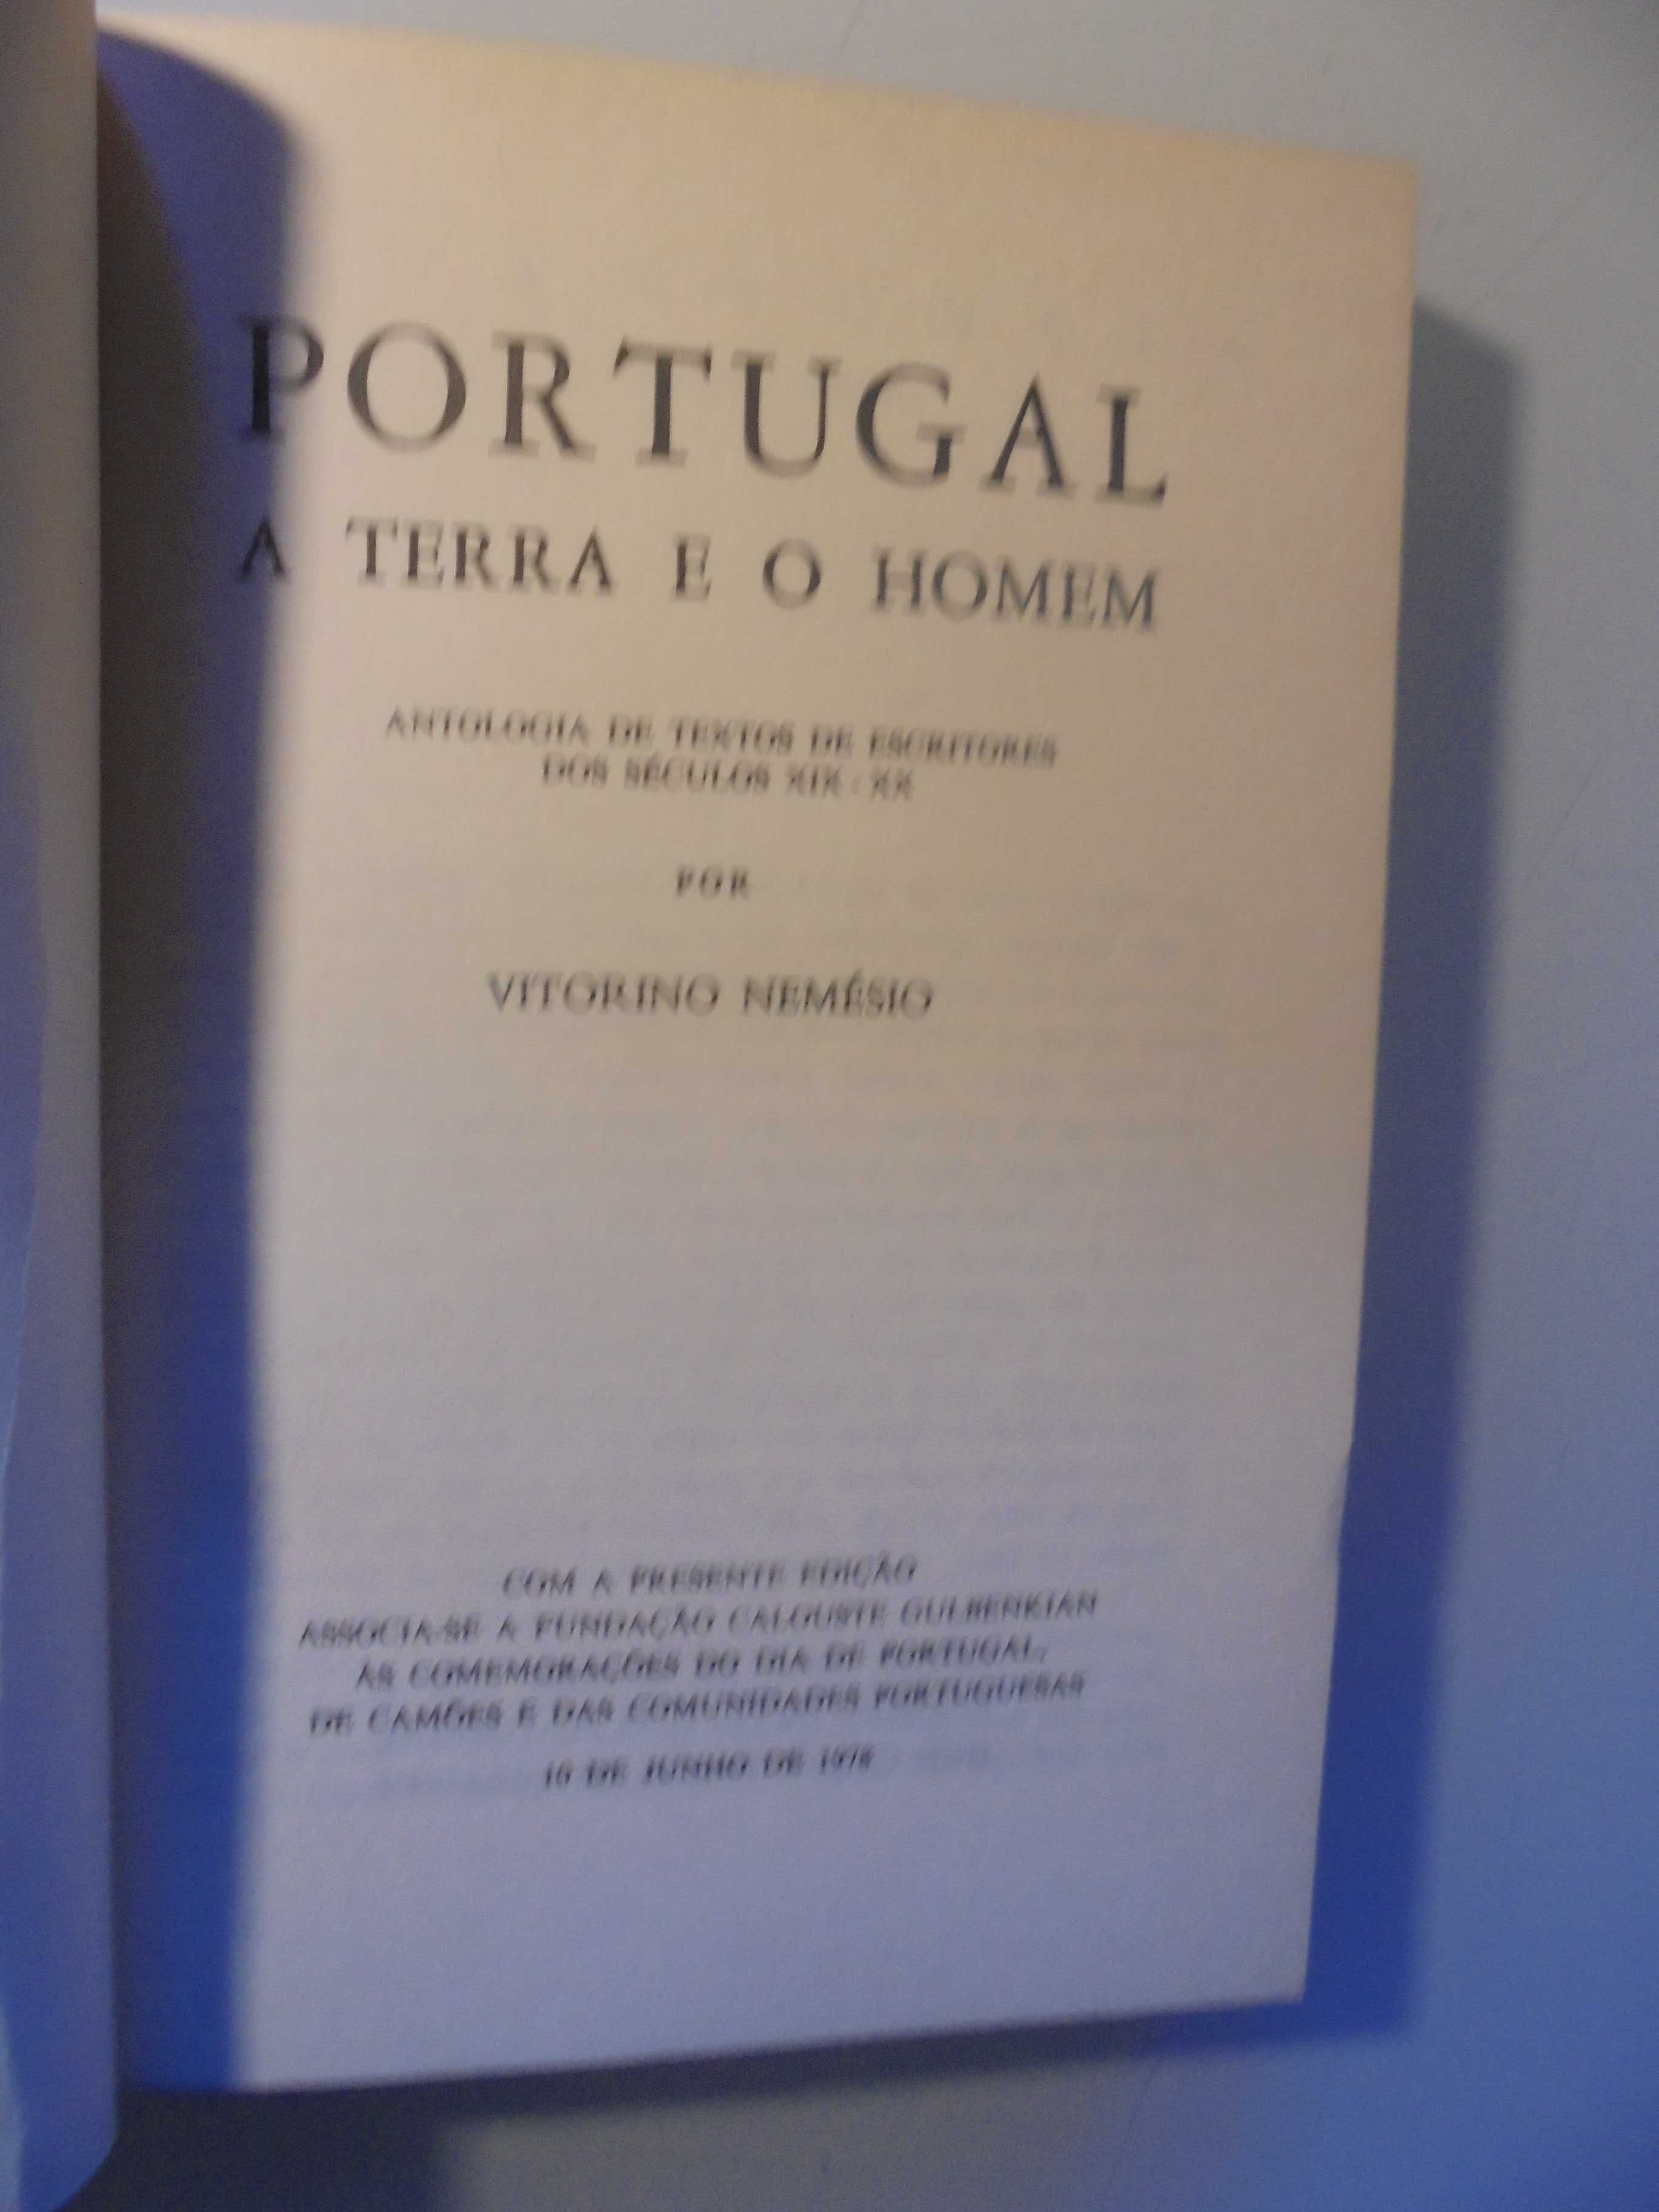 Nemésio (Vitorino);Antologia de Textos de Escritores Séculos XIX e XX